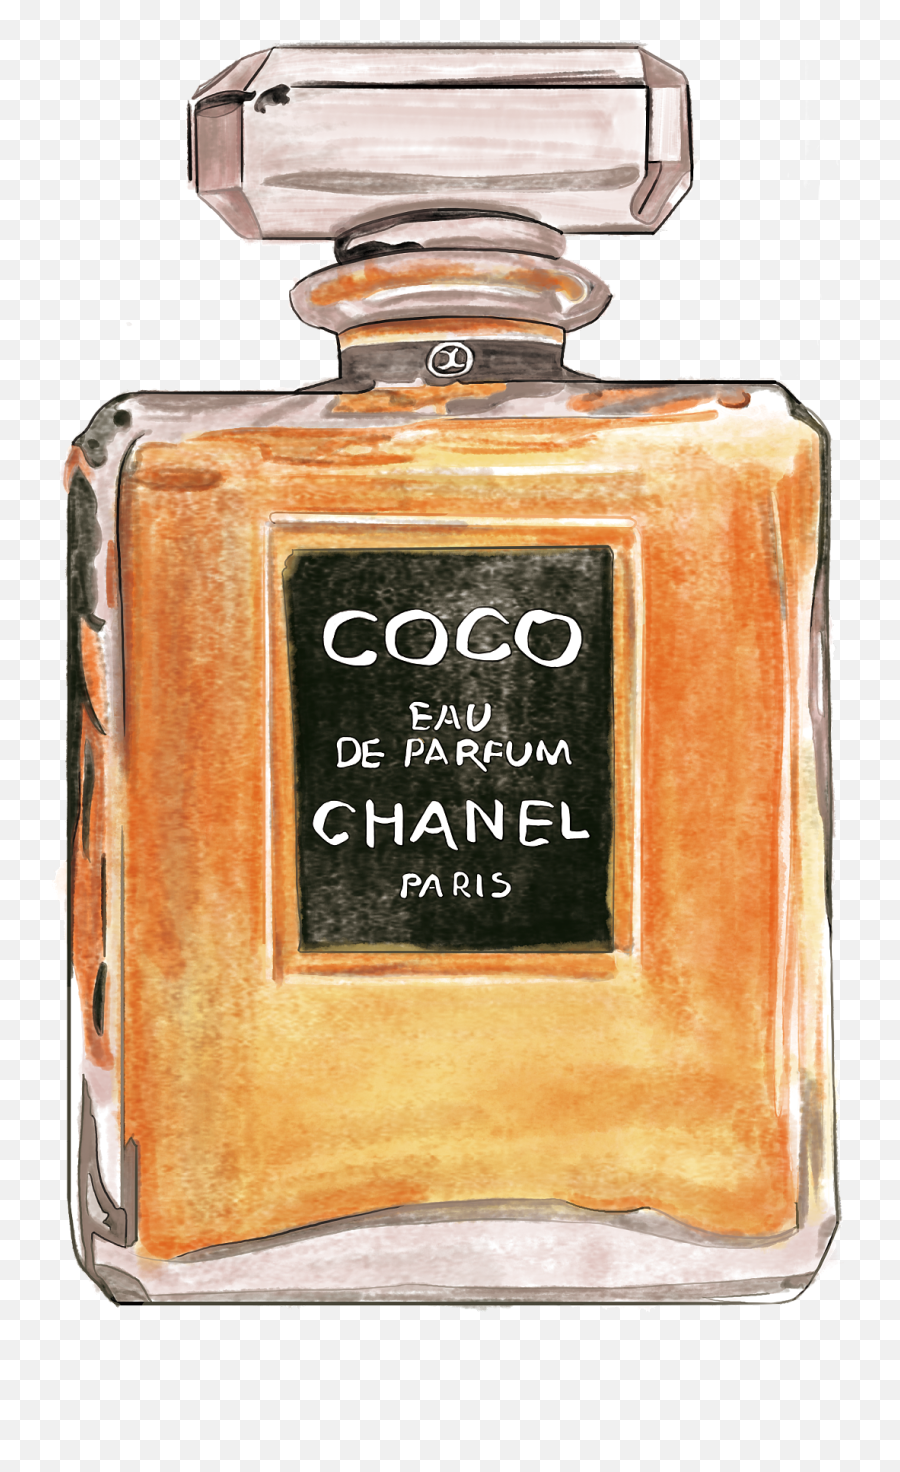 Coco Chanel PNG - Coco Chanel Logo, Coco Chanel Perfume Bottle, Coco Chanel  Color. - CleanPNG / KissPNG